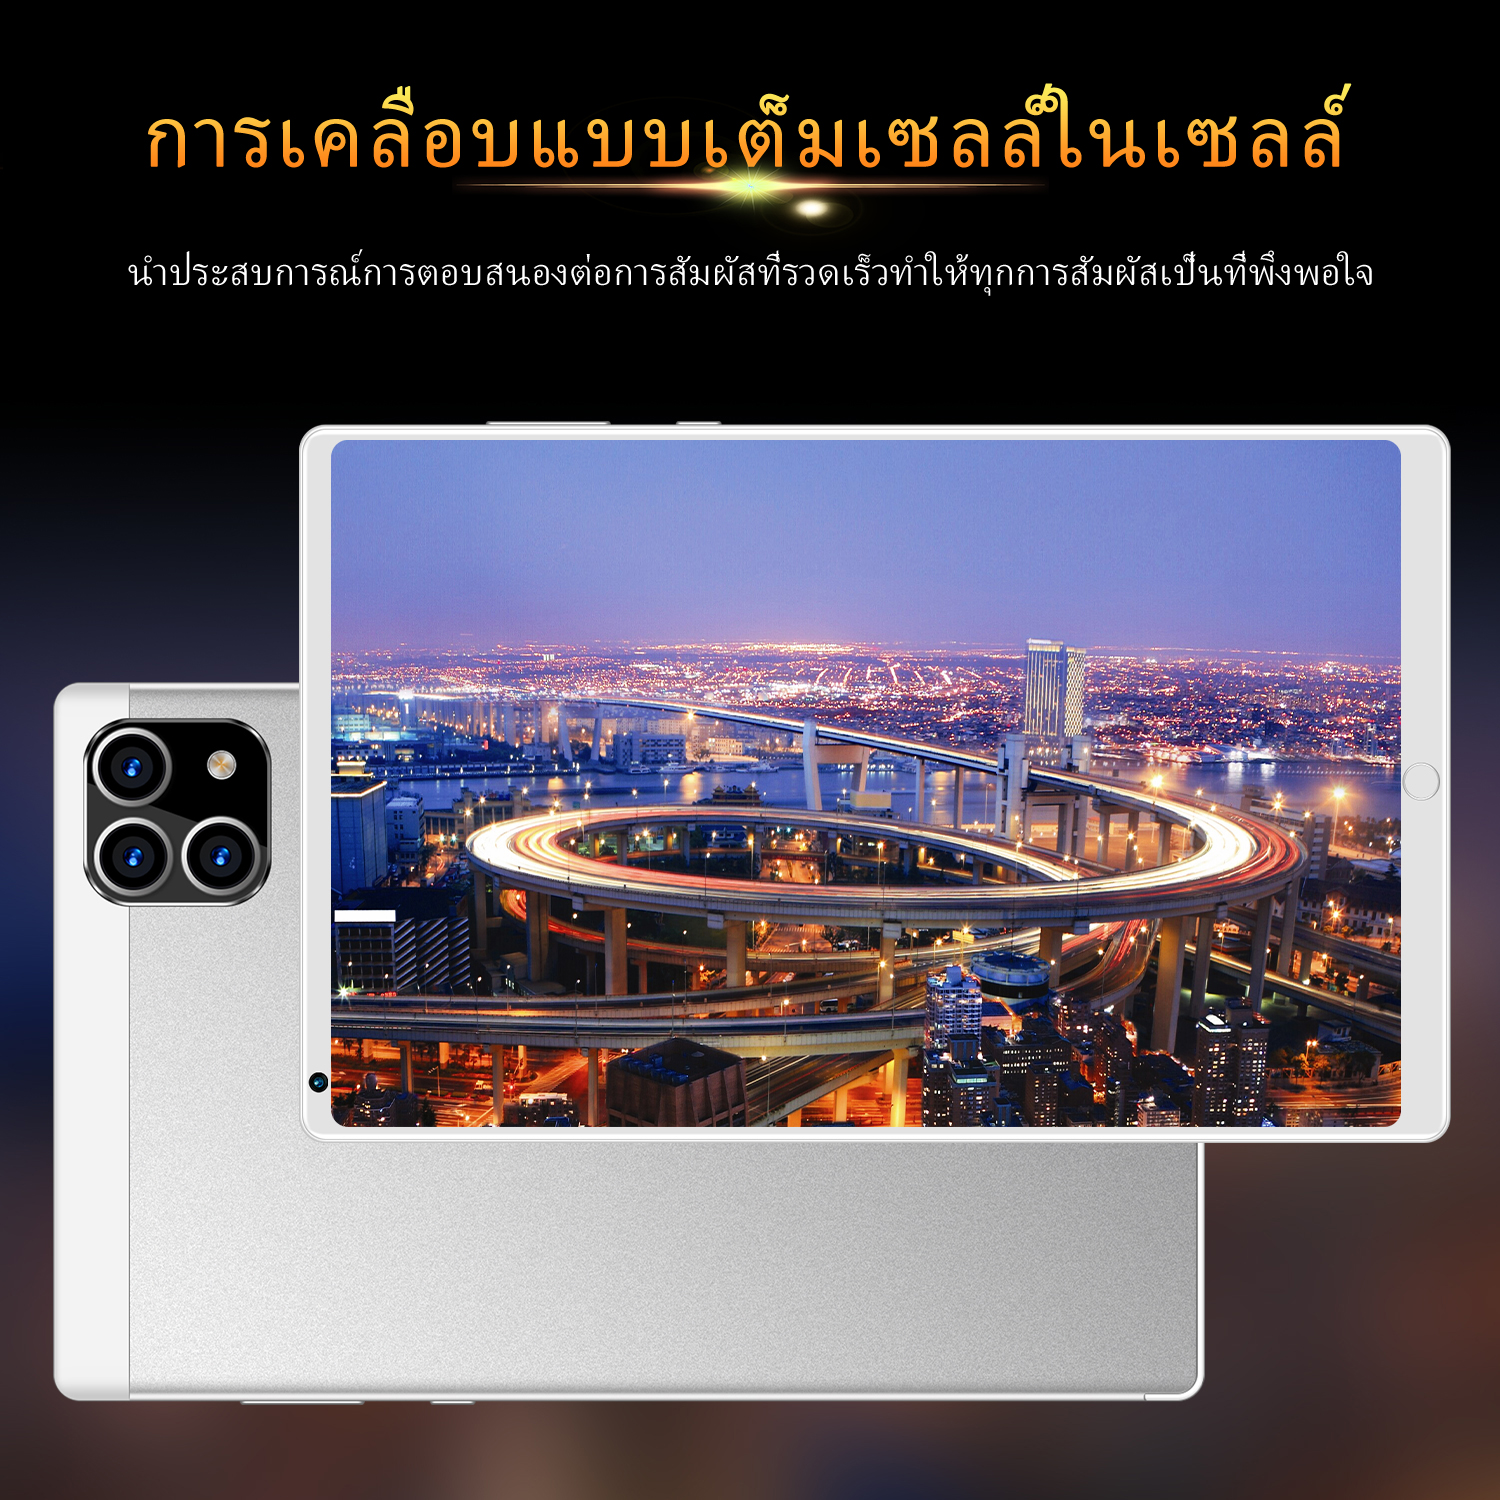 รูปภาพเพิ่มเติมเกี่ยวกับ แท็บเล็ต VIVO Pad Wifi โทรได้ 10.1นิ้ว แท็บเล็ตถูกๆ ซัมซุง Tablet RAM12G ROM512G Andorid10.0 แท็บเล็ต จัดส่งฟรี แทบเล็ตราคาถูก รองรับภาษาไทย แท็บเล็ตสำหรับเล่นเกมราคาถูก ไอเเพ็ด Tablet Full HD แท็บเล็ตราคาถูกๆ แท็บเล็ตราคาถูกรุ่นล่าสุด